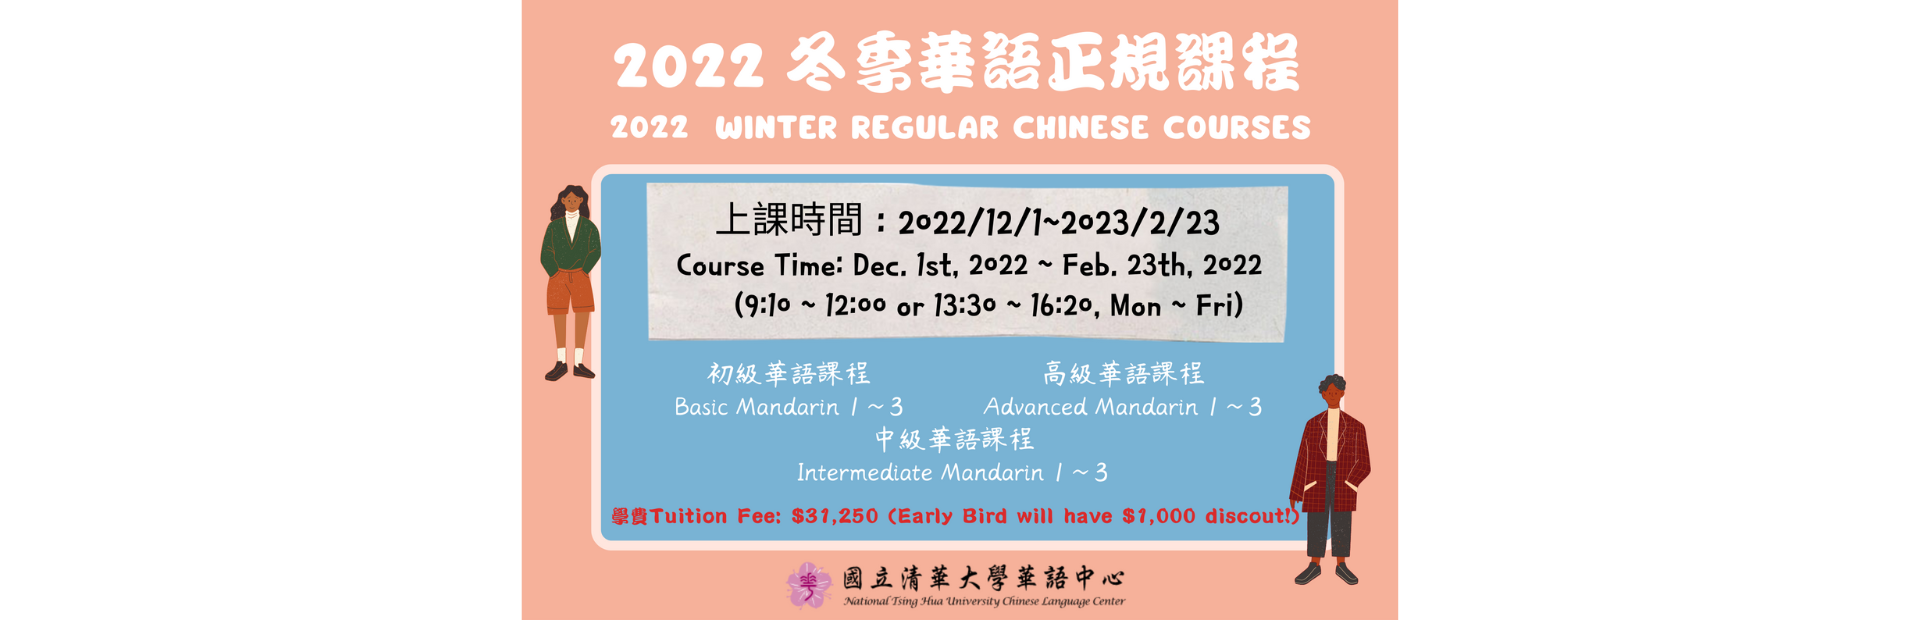 2022年華語中心冬季正規班重要公告